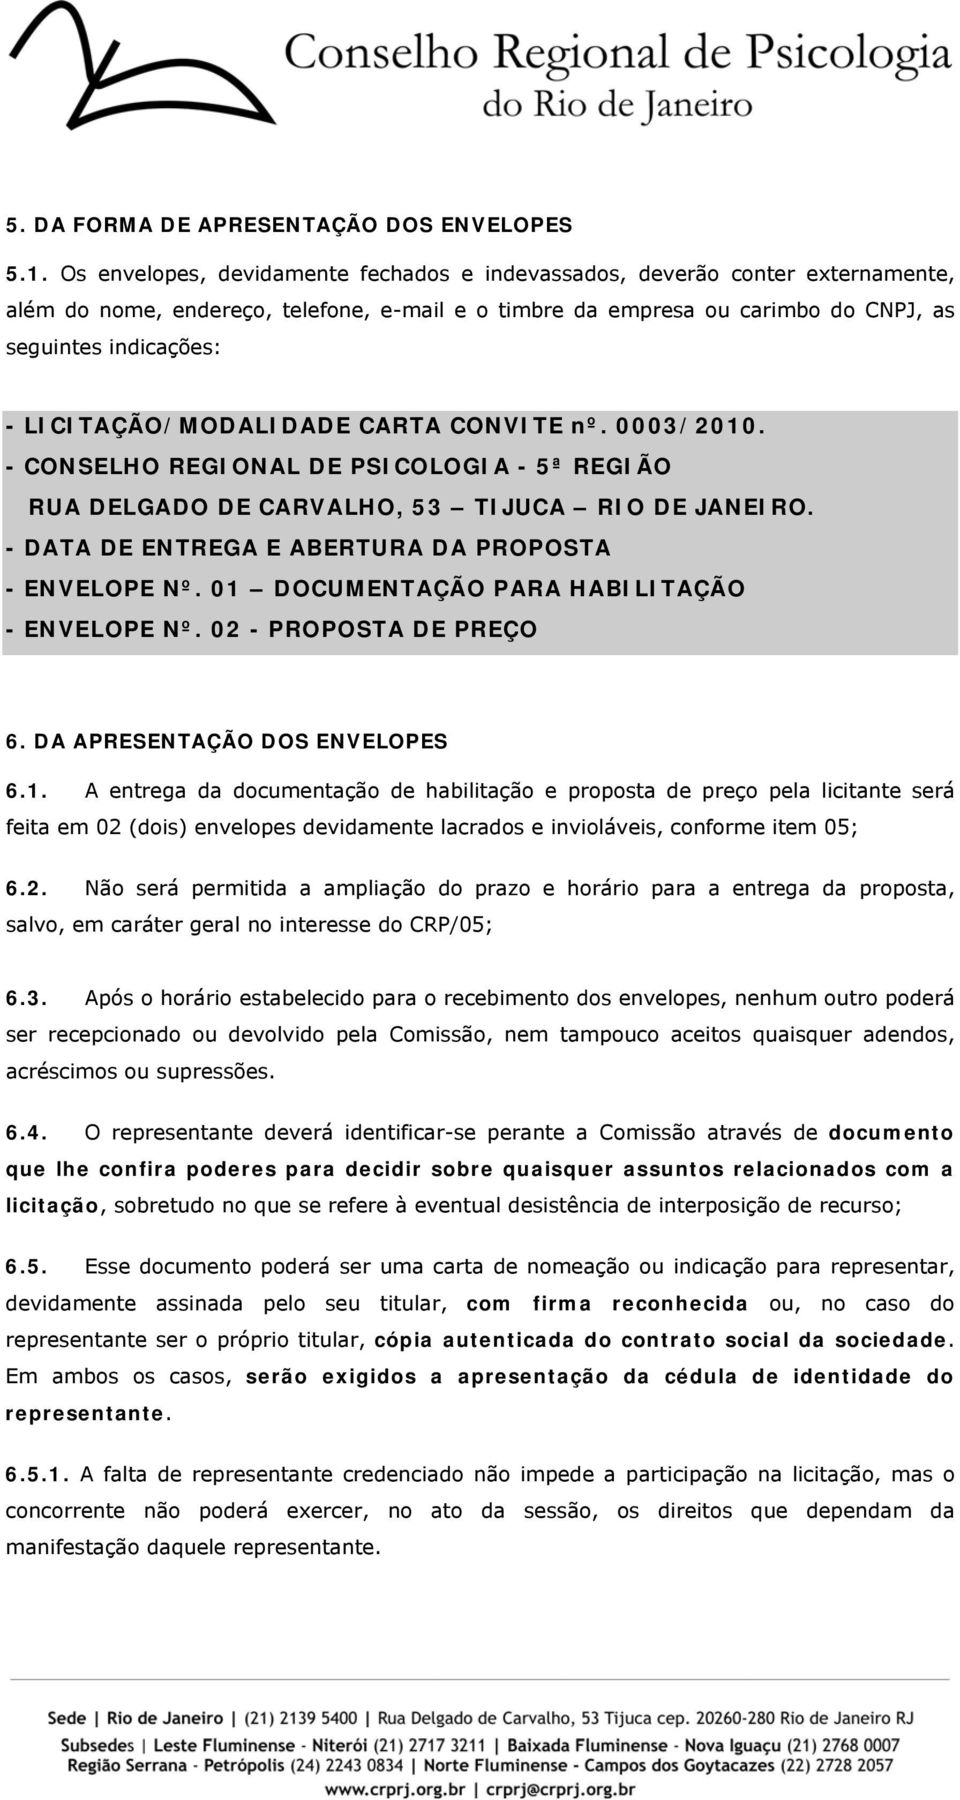 LICITAÇÃO/MODALIDADE CARTA CONVITE nº. 0003/2010. - CONSELHO REGIONAL DE PSICOLOGIA - 5ª REGIÃO RUA DELGADO DE CARVALHO, 53 TIJUCA RIO DE JANEIRO.